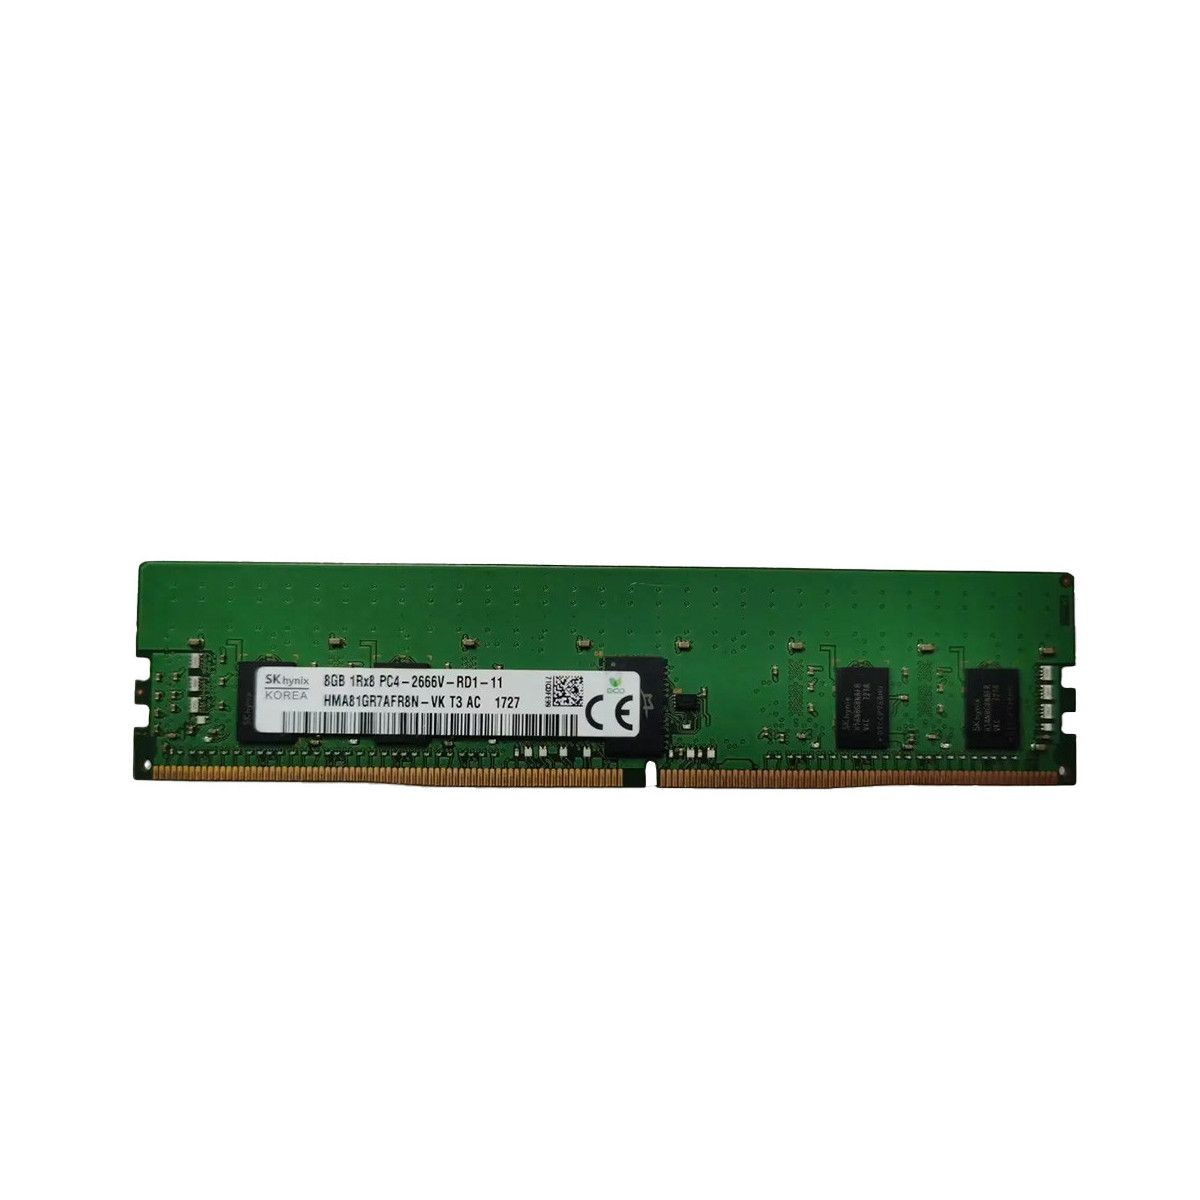 T9V39AA-MS - Mem-star 1x 8GB DDR4-2400 RDIMM PC4-19200T-R - Memstar Compatible OEM Memory 1 - Memstar 